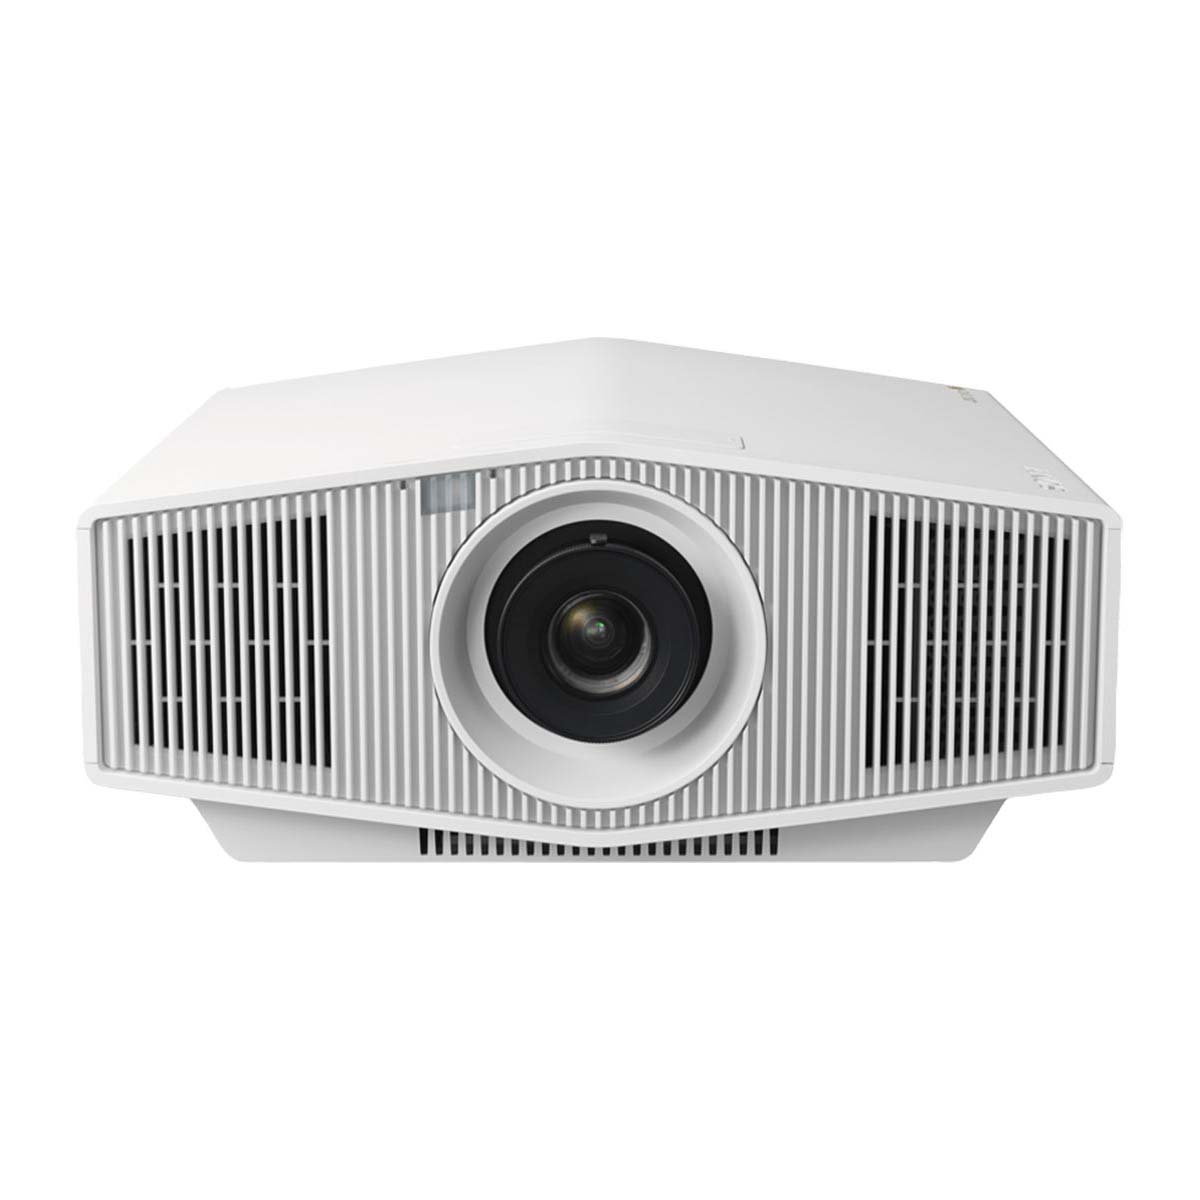 SONY VPL-XW5000ES 4K Ultra HD Laser Projector White